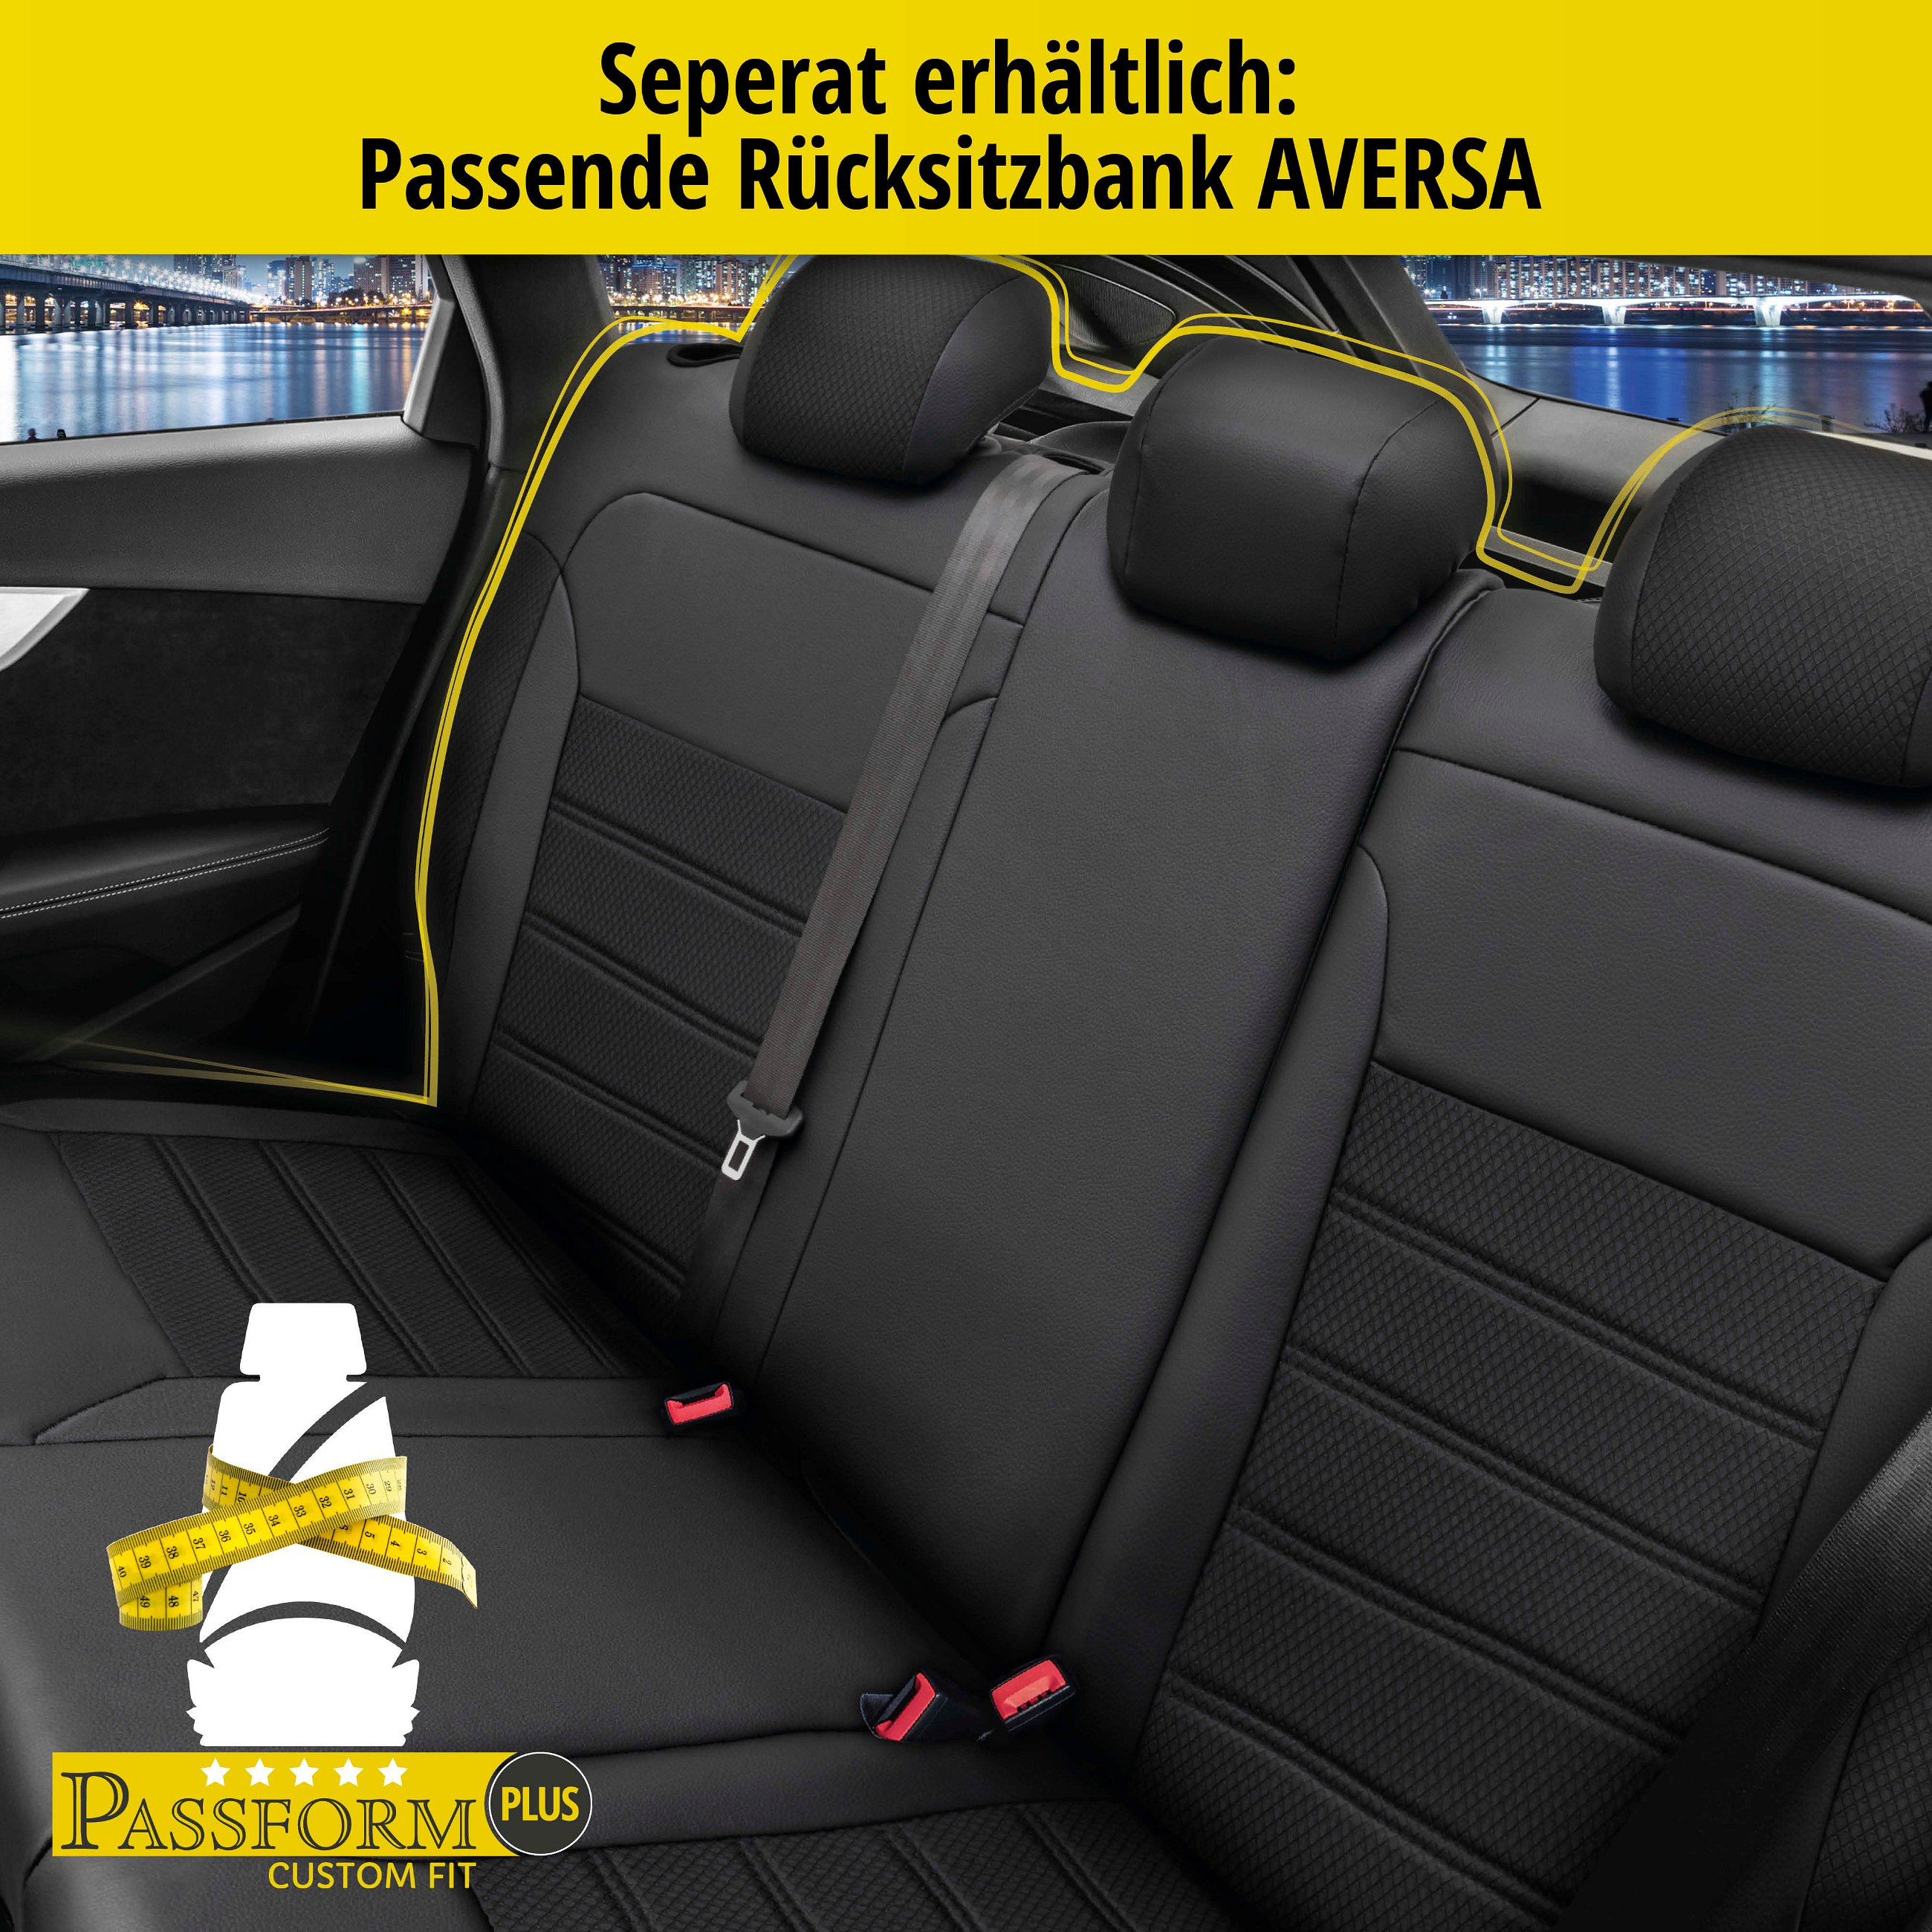 Passform Sitzbezug Aversa für Audi A4 Avant (8K5, B8) 11/2007-12/2015, 2 Einzelsitzbezüge für Sportsitze